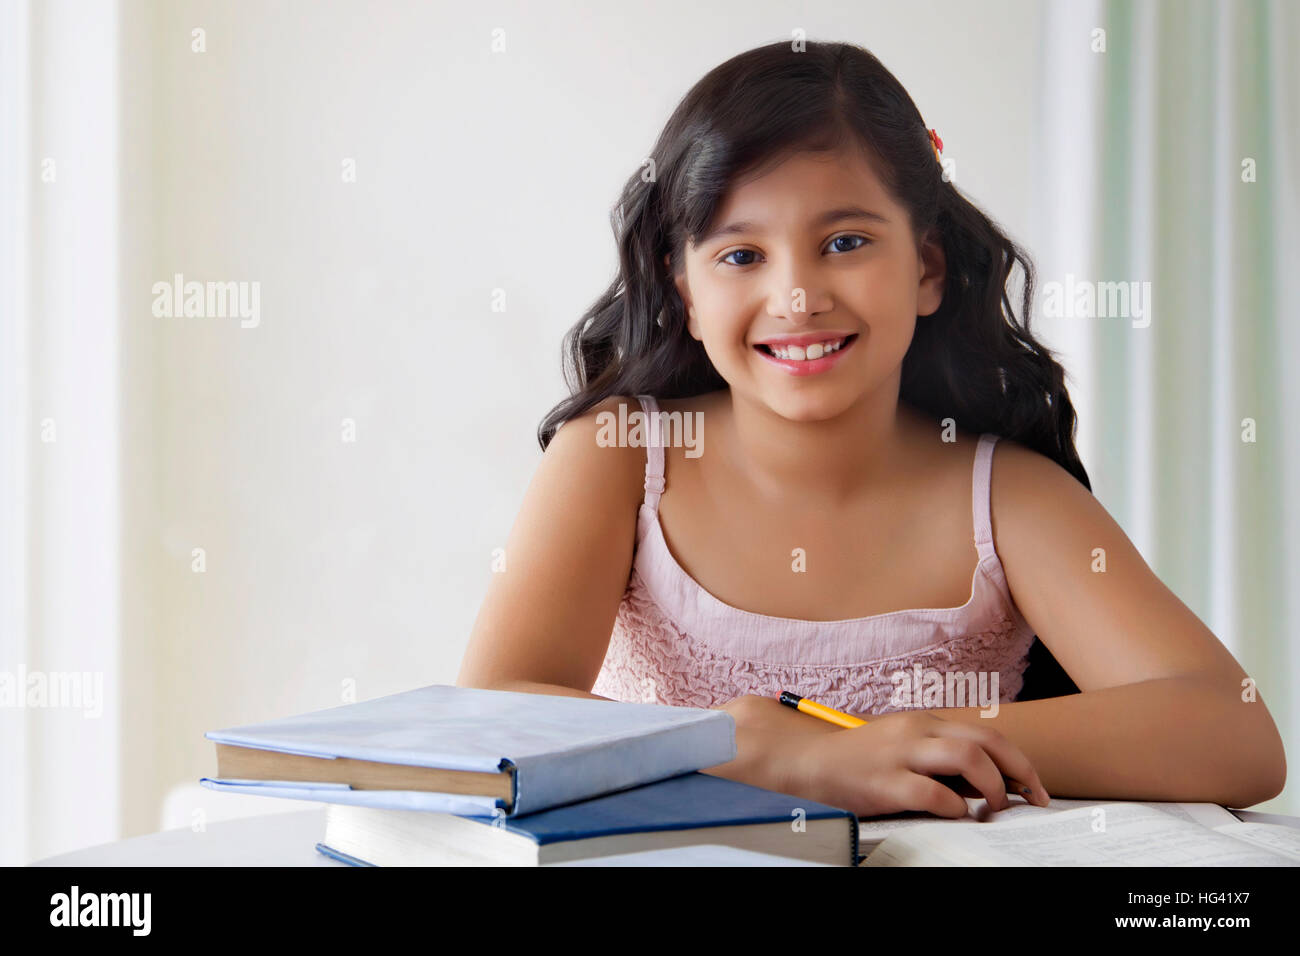 Portrait von lächelnden cute girl am Schreibtisch mit Bücher Stockfoto